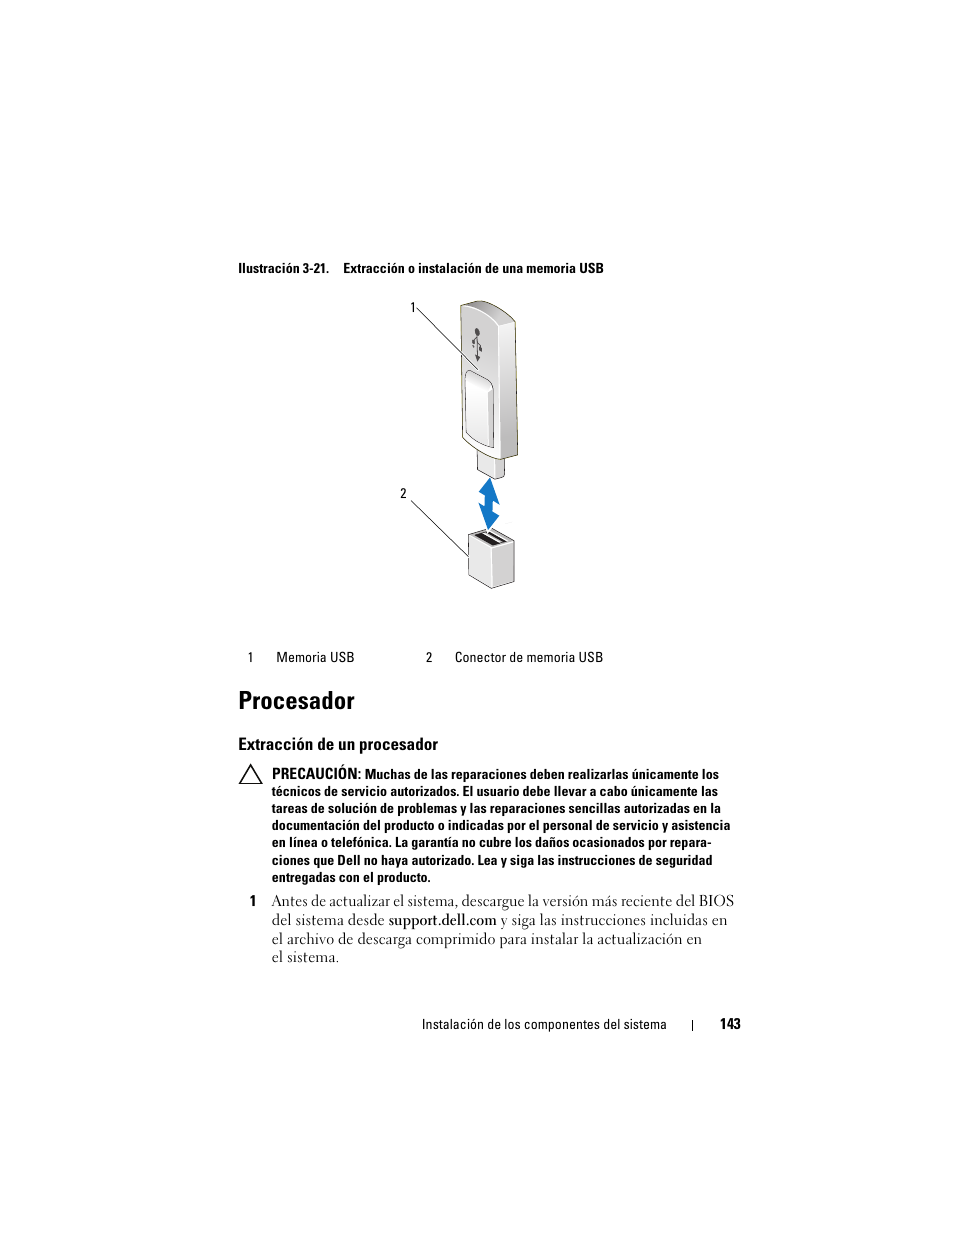 Procesador, Extracción de un procesador, A la ilustración 3-21 | Dell PowerEdge T310 Manual del usuario | Página 143 / 218